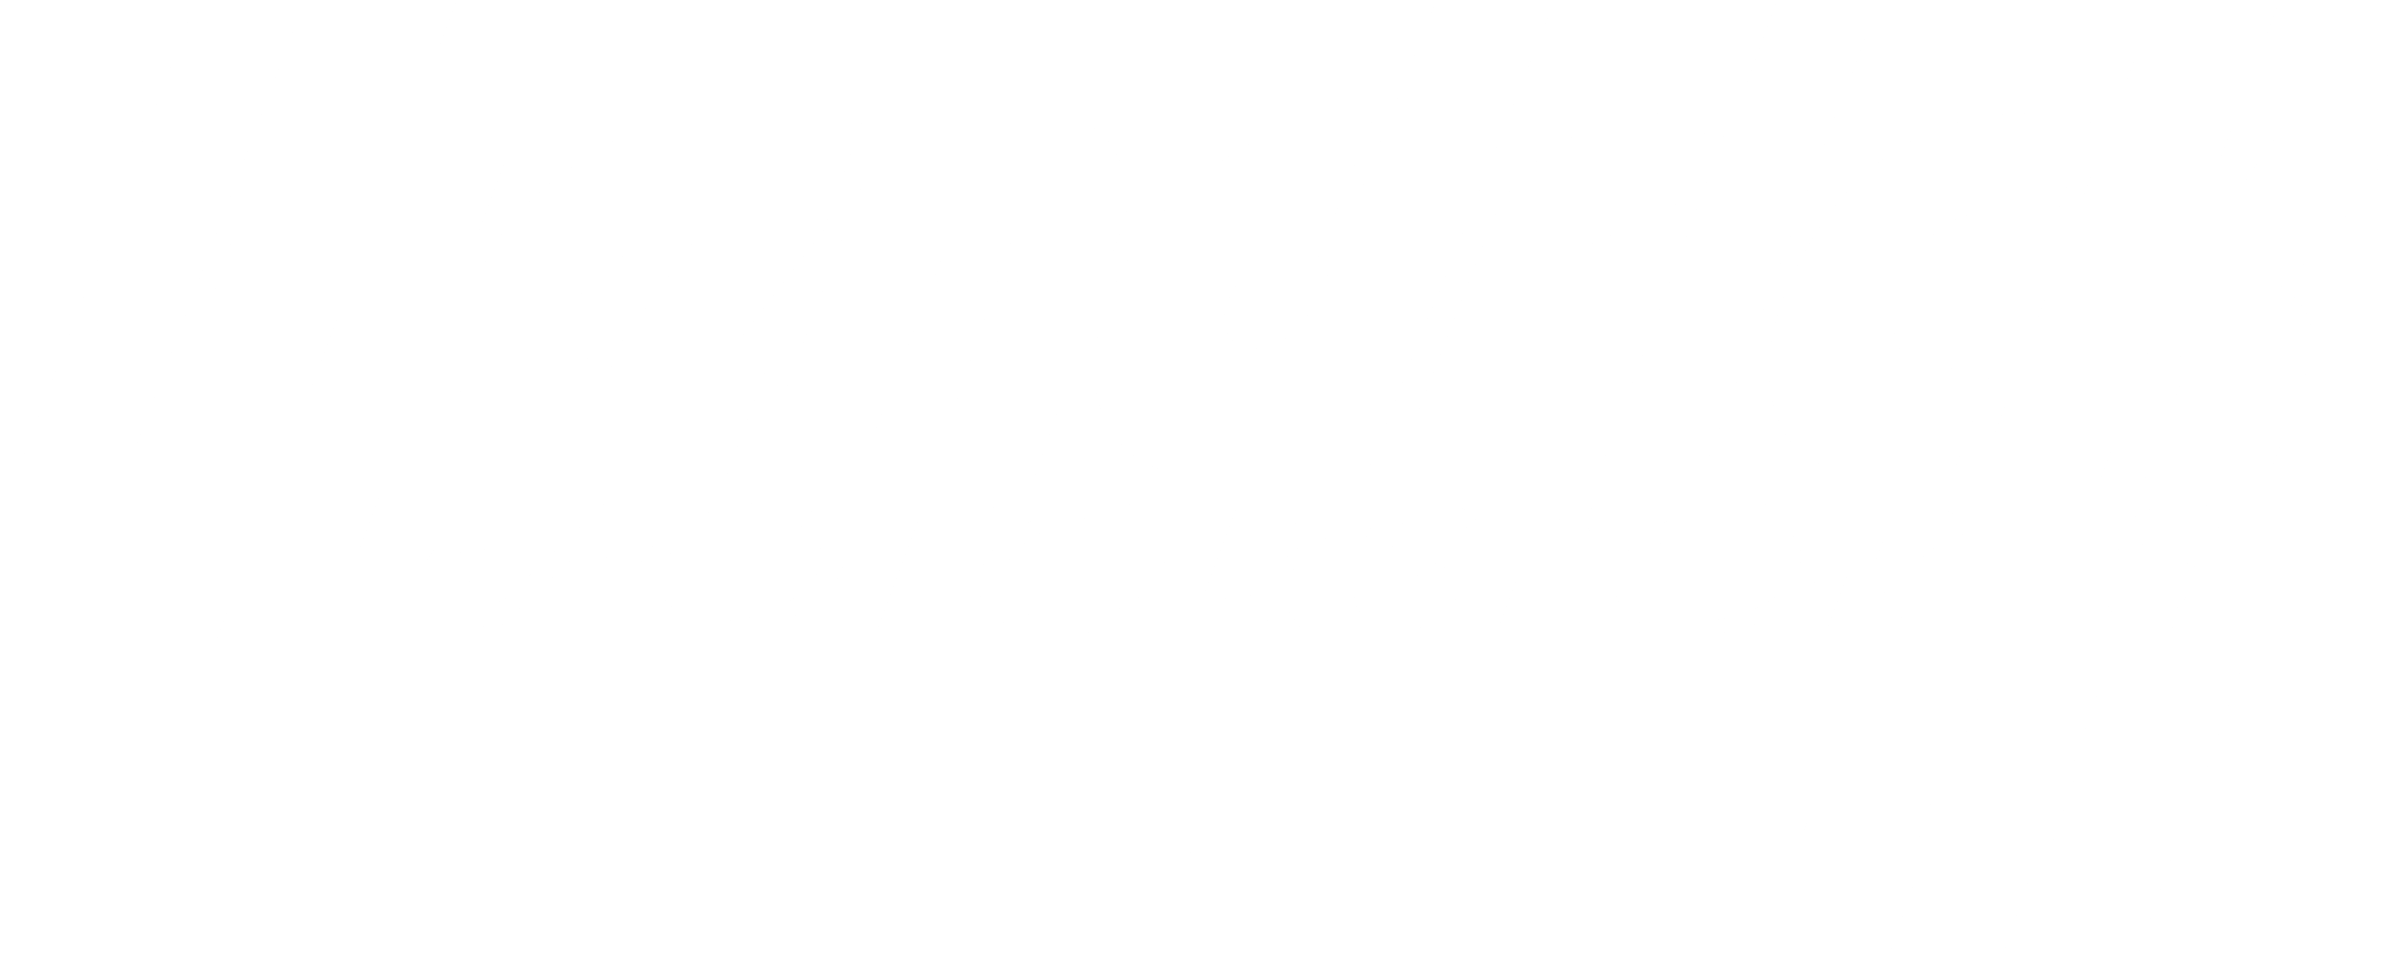 Hendrick Motorsports Logo - Racing – Chase Elliott